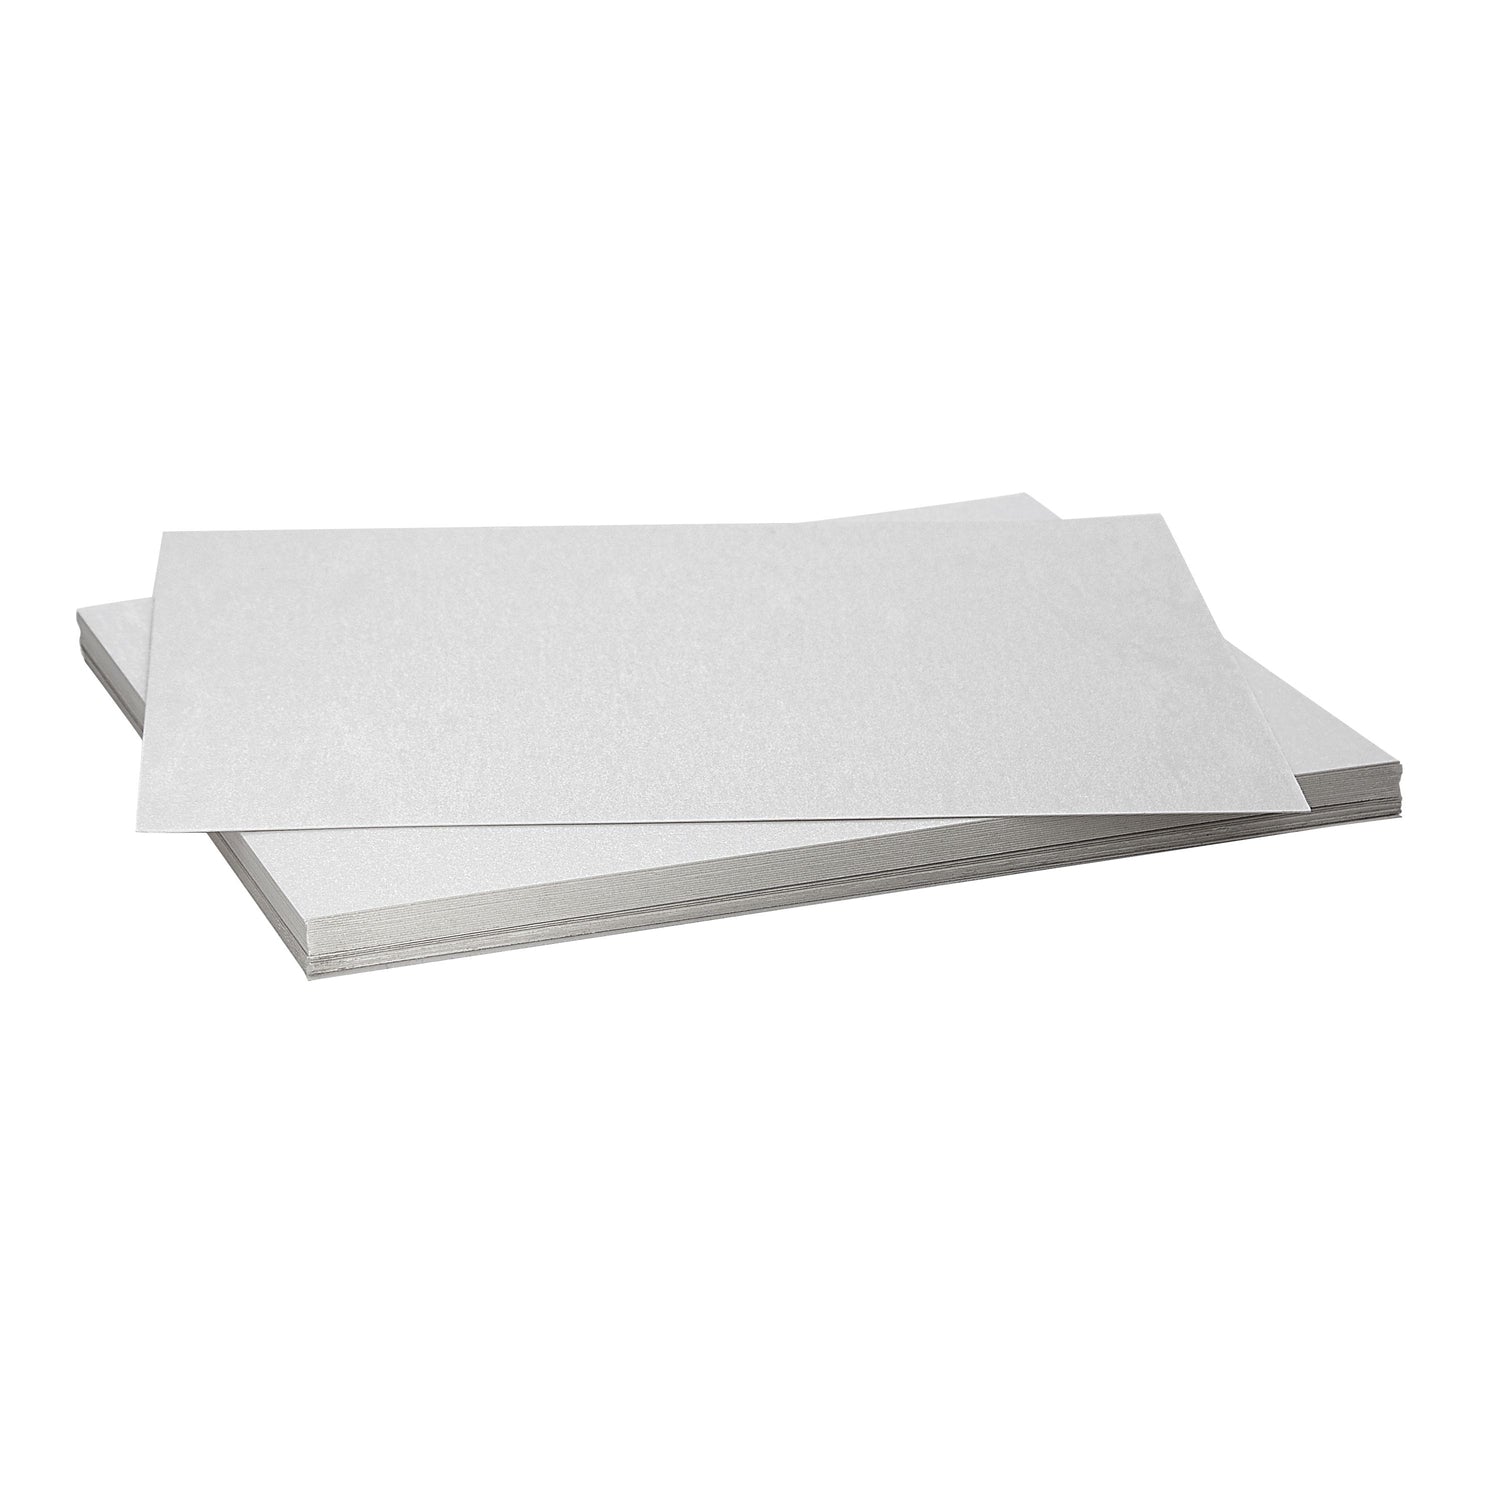 30 Sheets Light Blue Glitter Cardstock Paper for DIY Crafts, Card